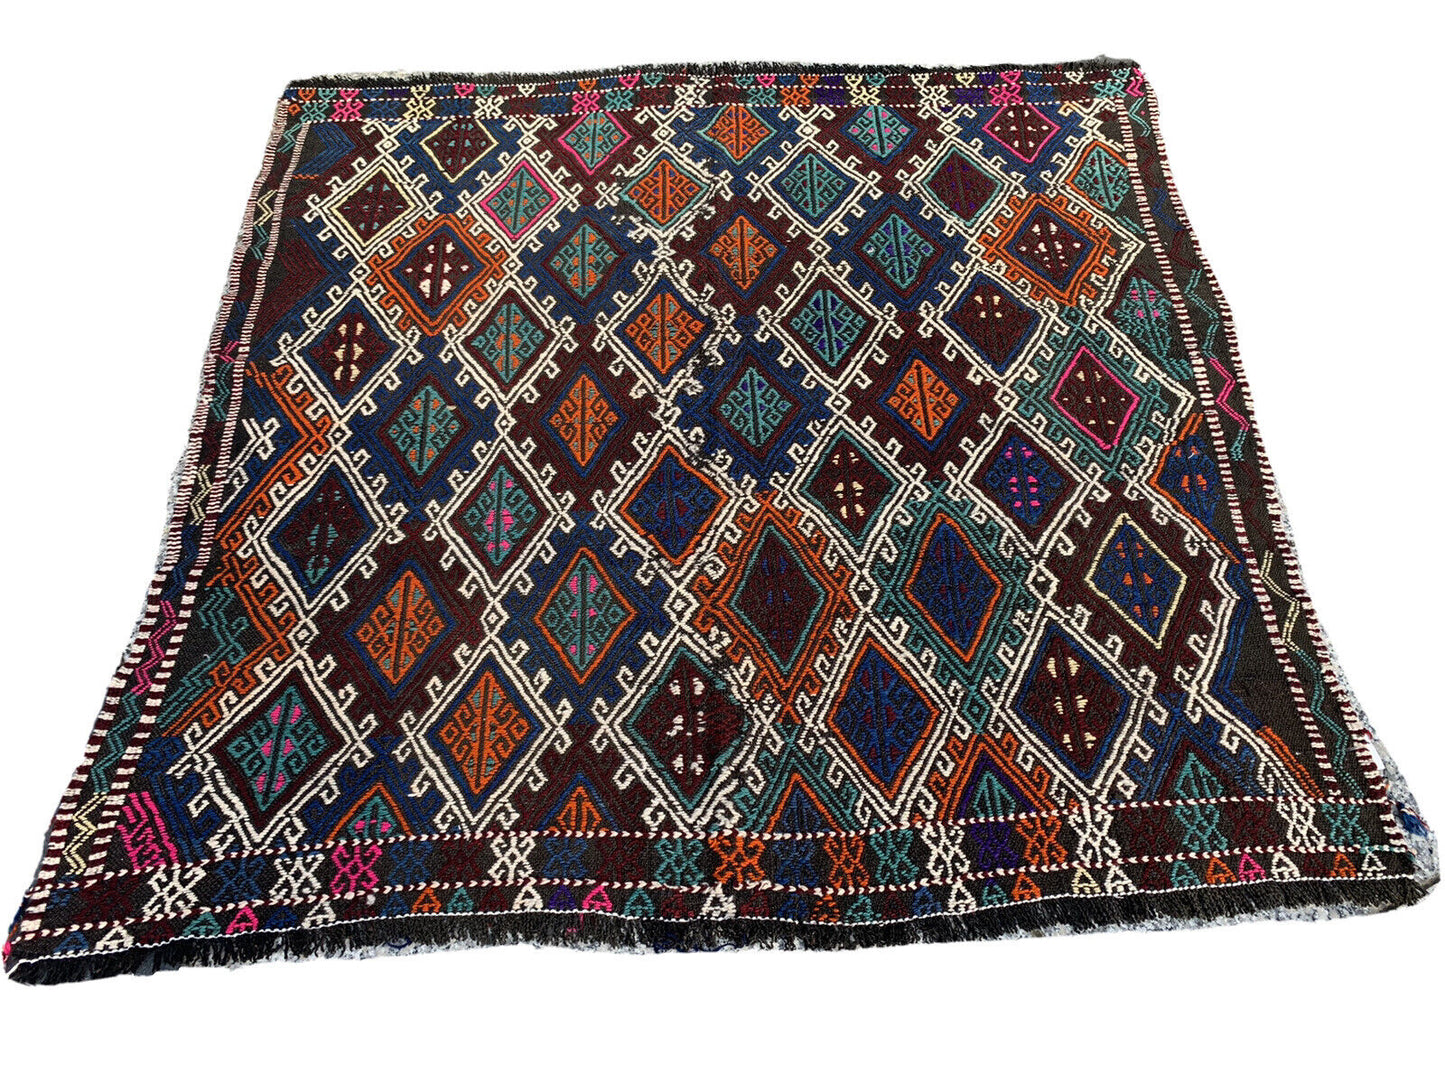 Traditional Turkish Kilim Carpet, Vintage Wool Country Kilim 147X147 Cm